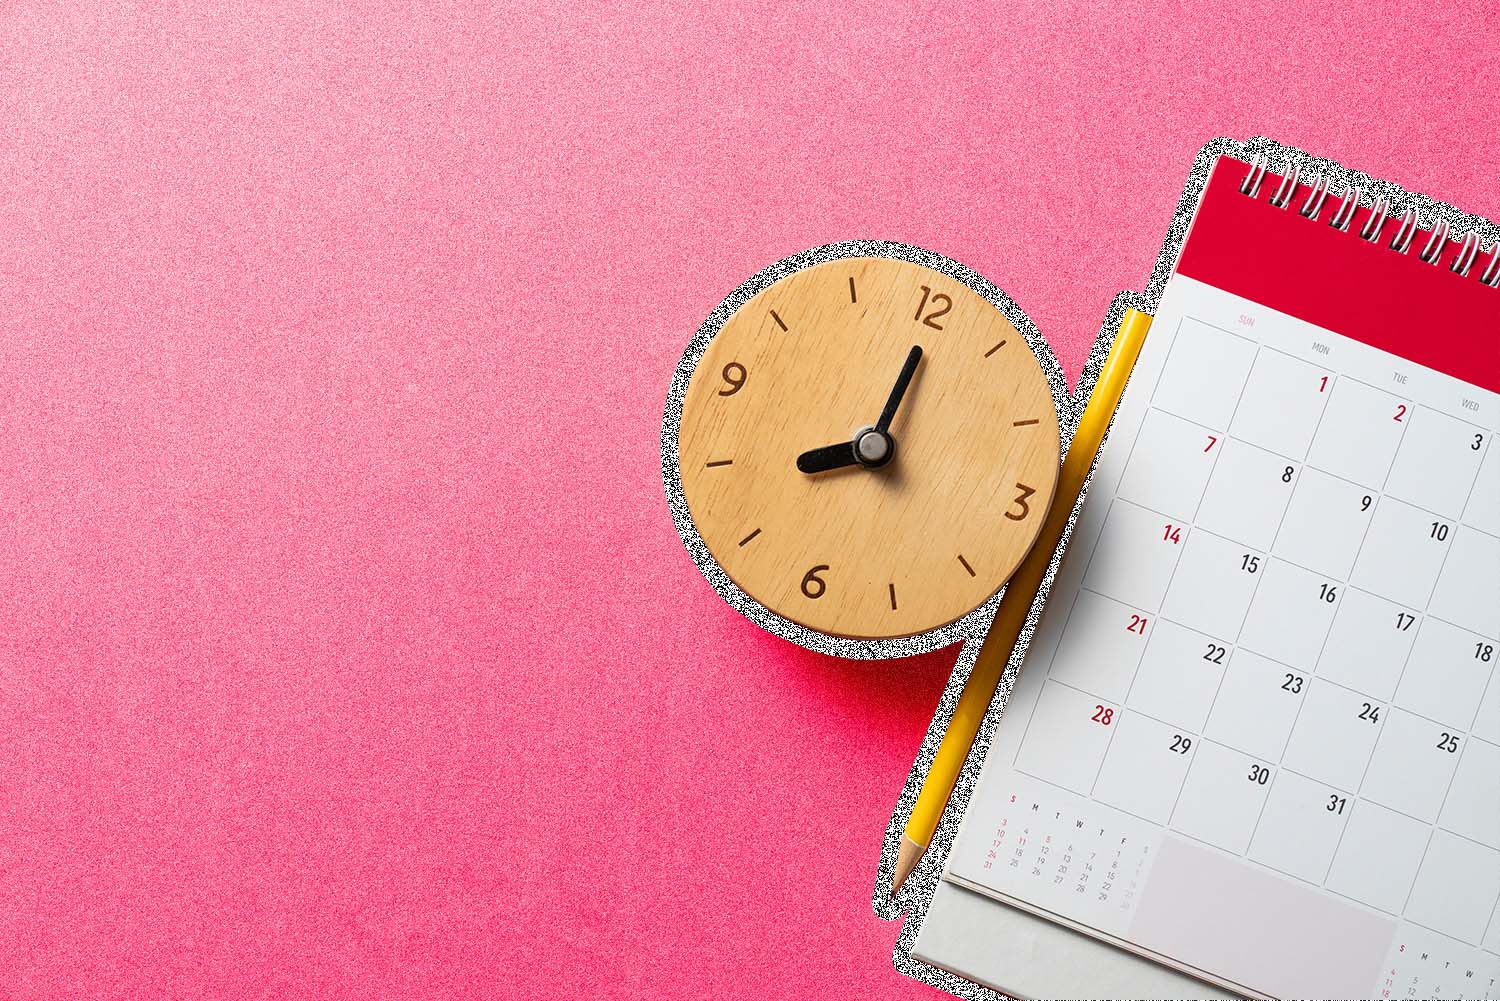 Clock, calendar and pencil